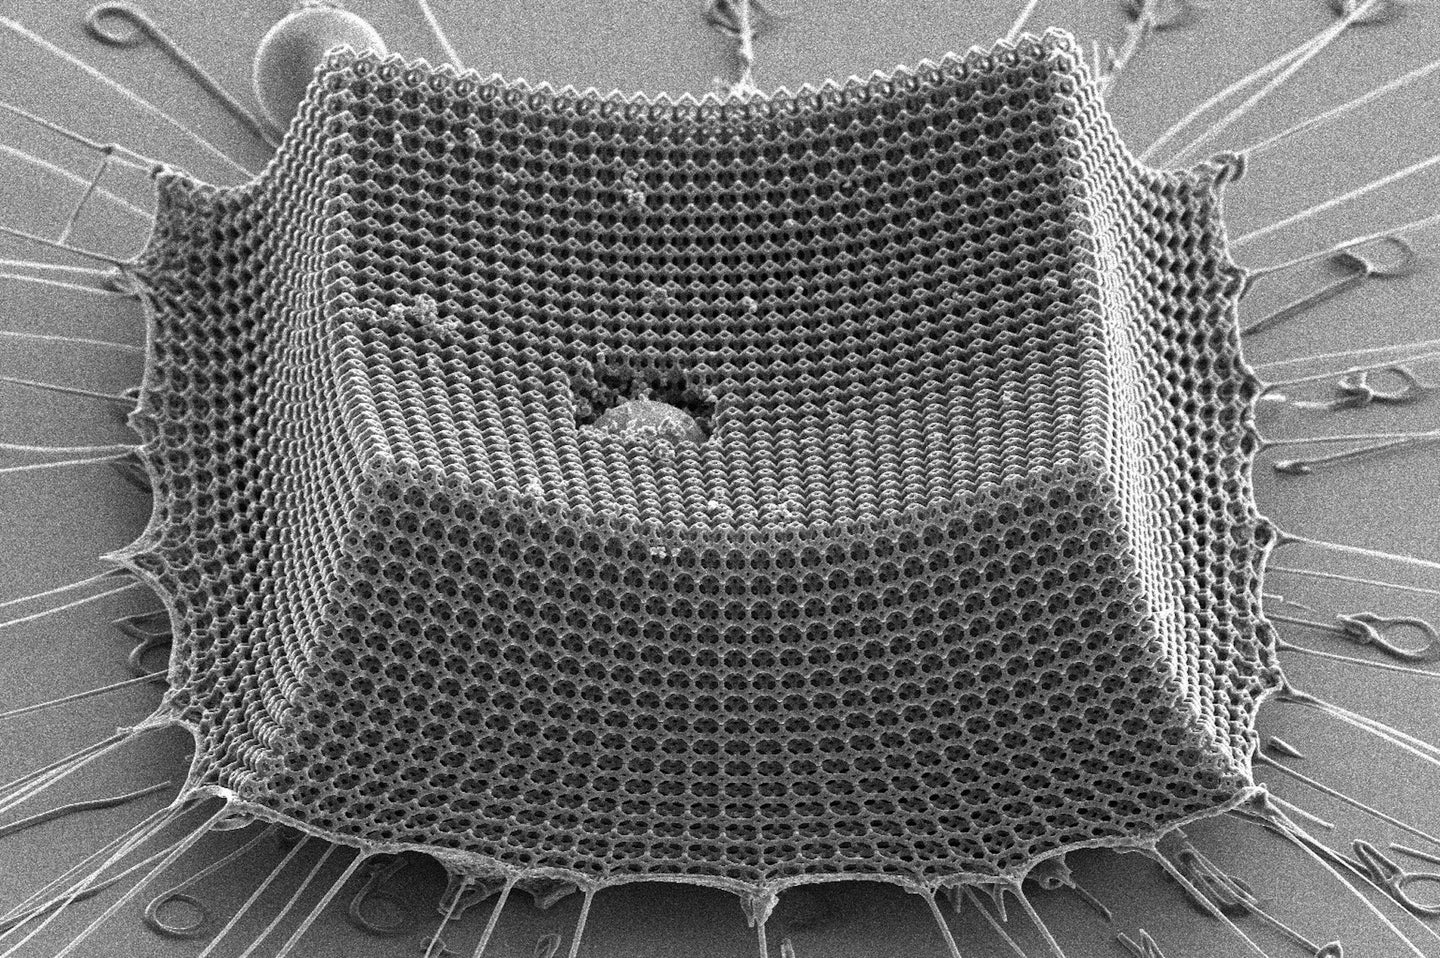 Nanoarmor design under microscope.